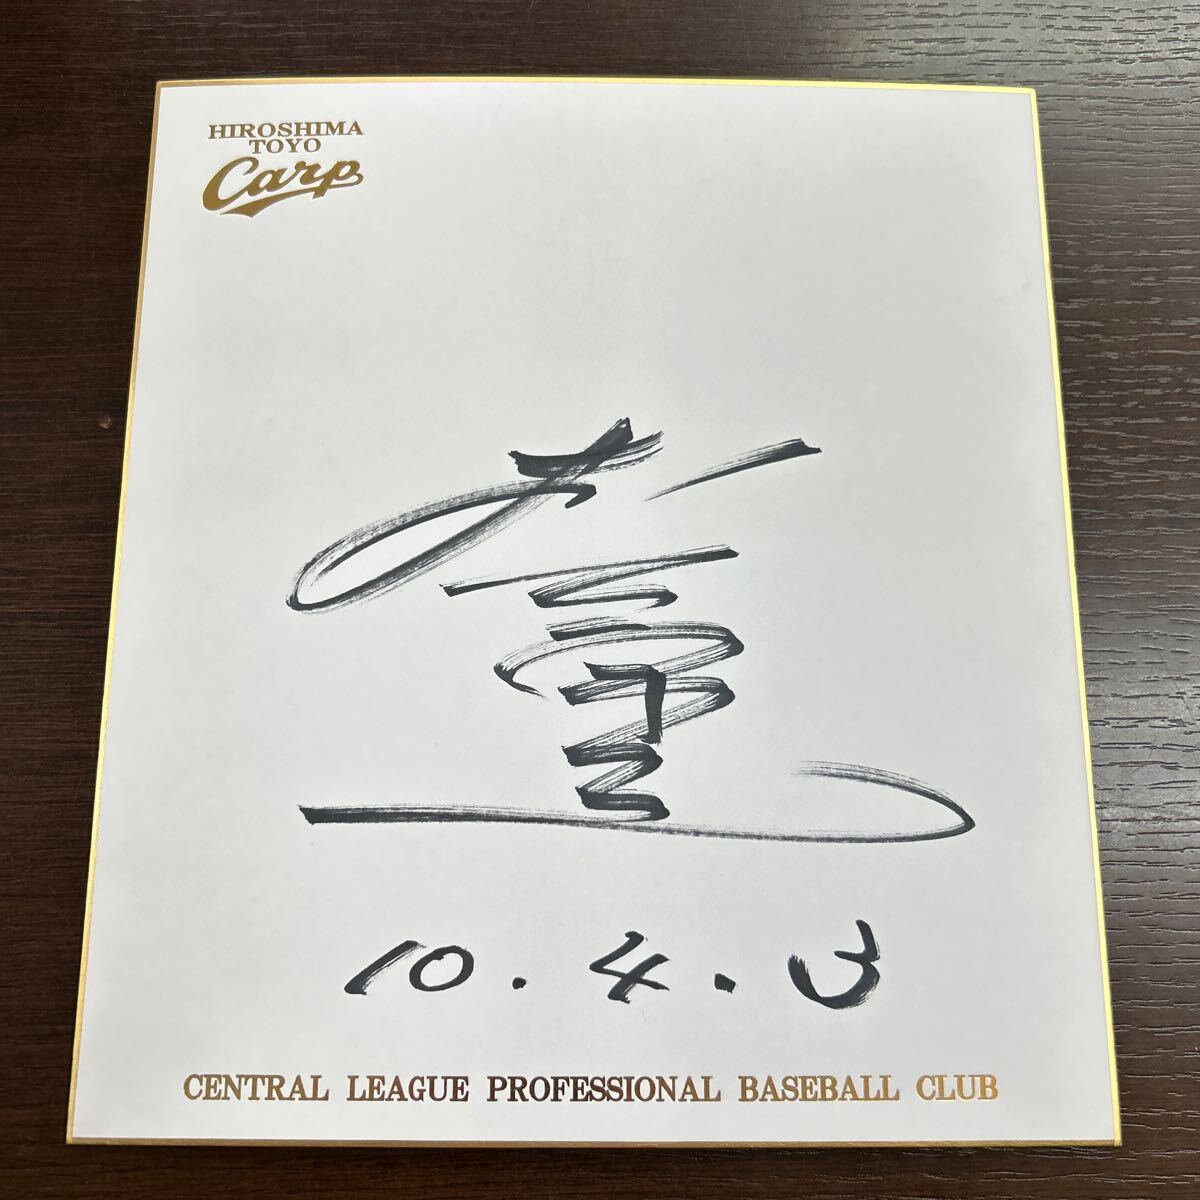 दुर्लभ हिरोशिमा टोयो कार्प युकिओ किनुगासा हस्ताक्षरित रंगीन कागज़ आधिकारिक टीम हस्ताक्षरित रंगीन कागज़ कार लोगो, बेसबॉल, यादगार, संबंधित सामान, संकेत